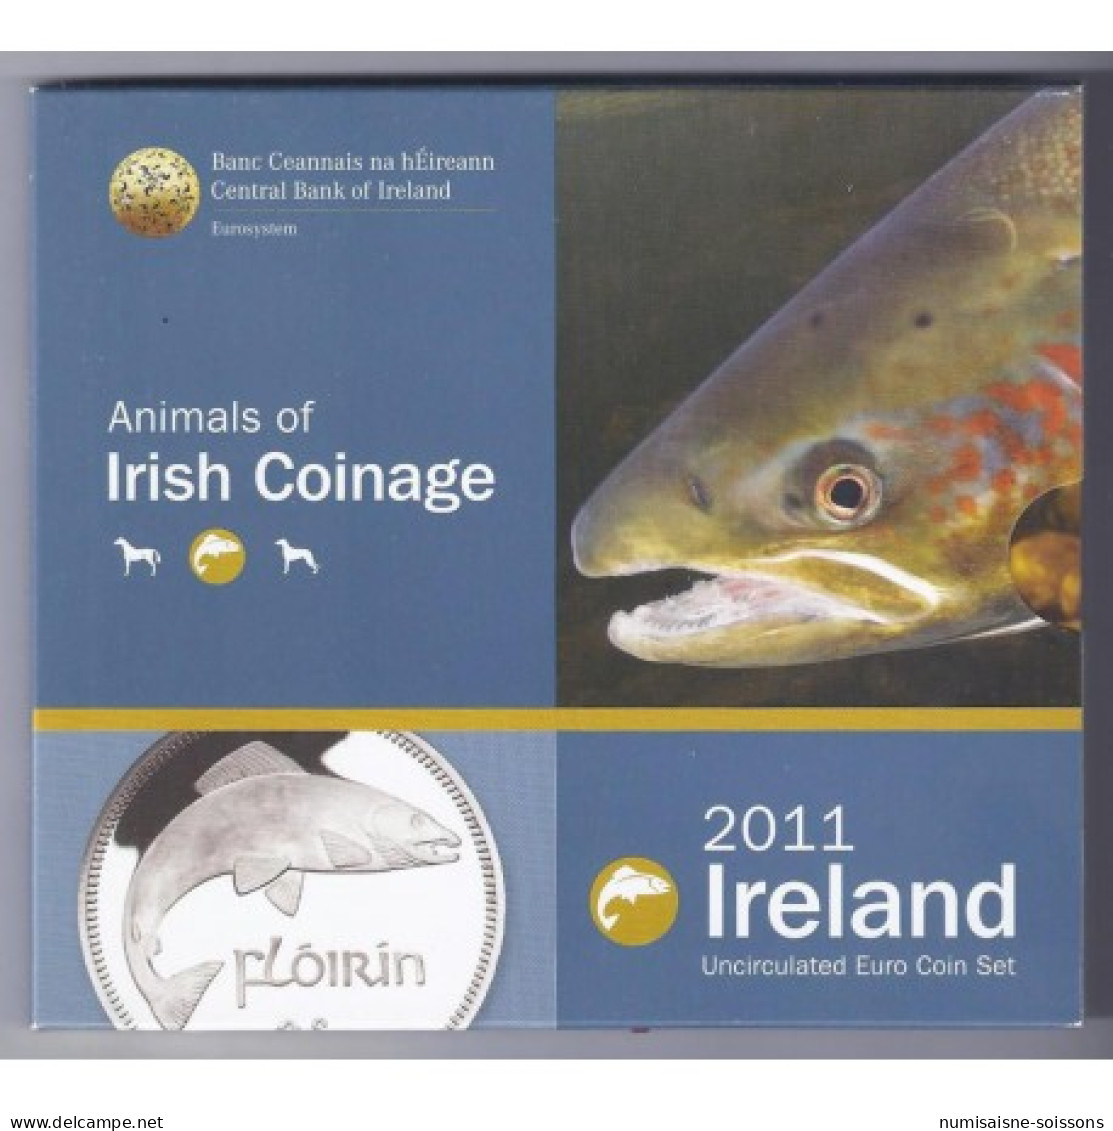 IRLANDE - COFFRET EURO BRILLANT UNIVERSEL 2011 - 8 PIECES (3.88 Euros) - Irlande